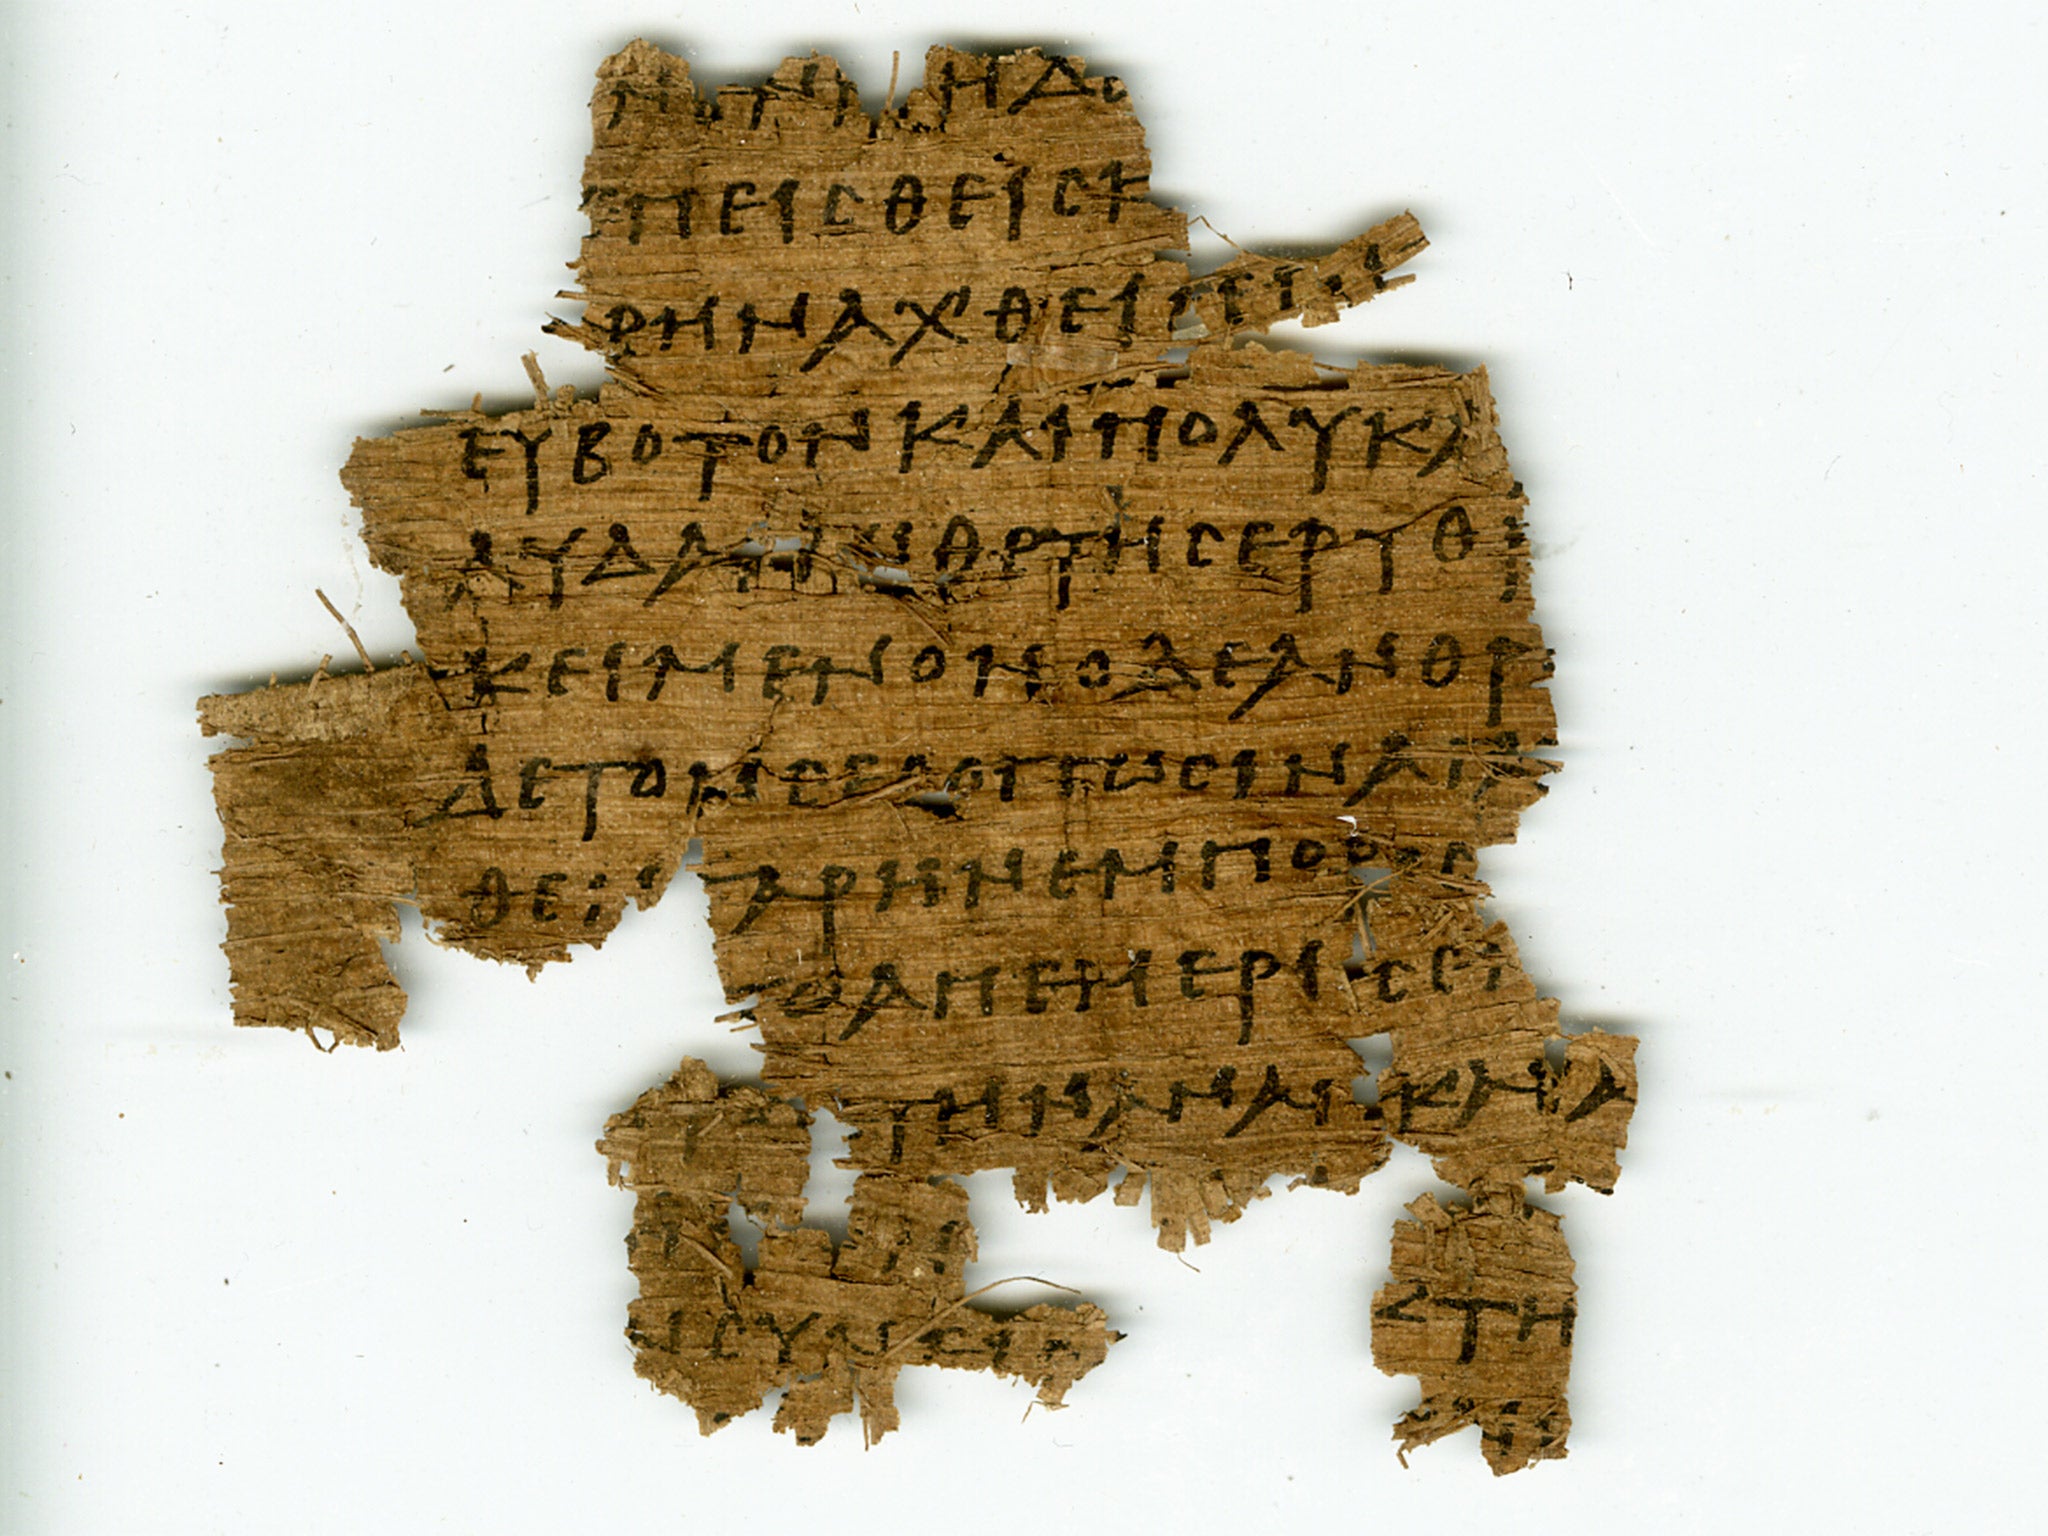 Half a million papyrus fragments were found